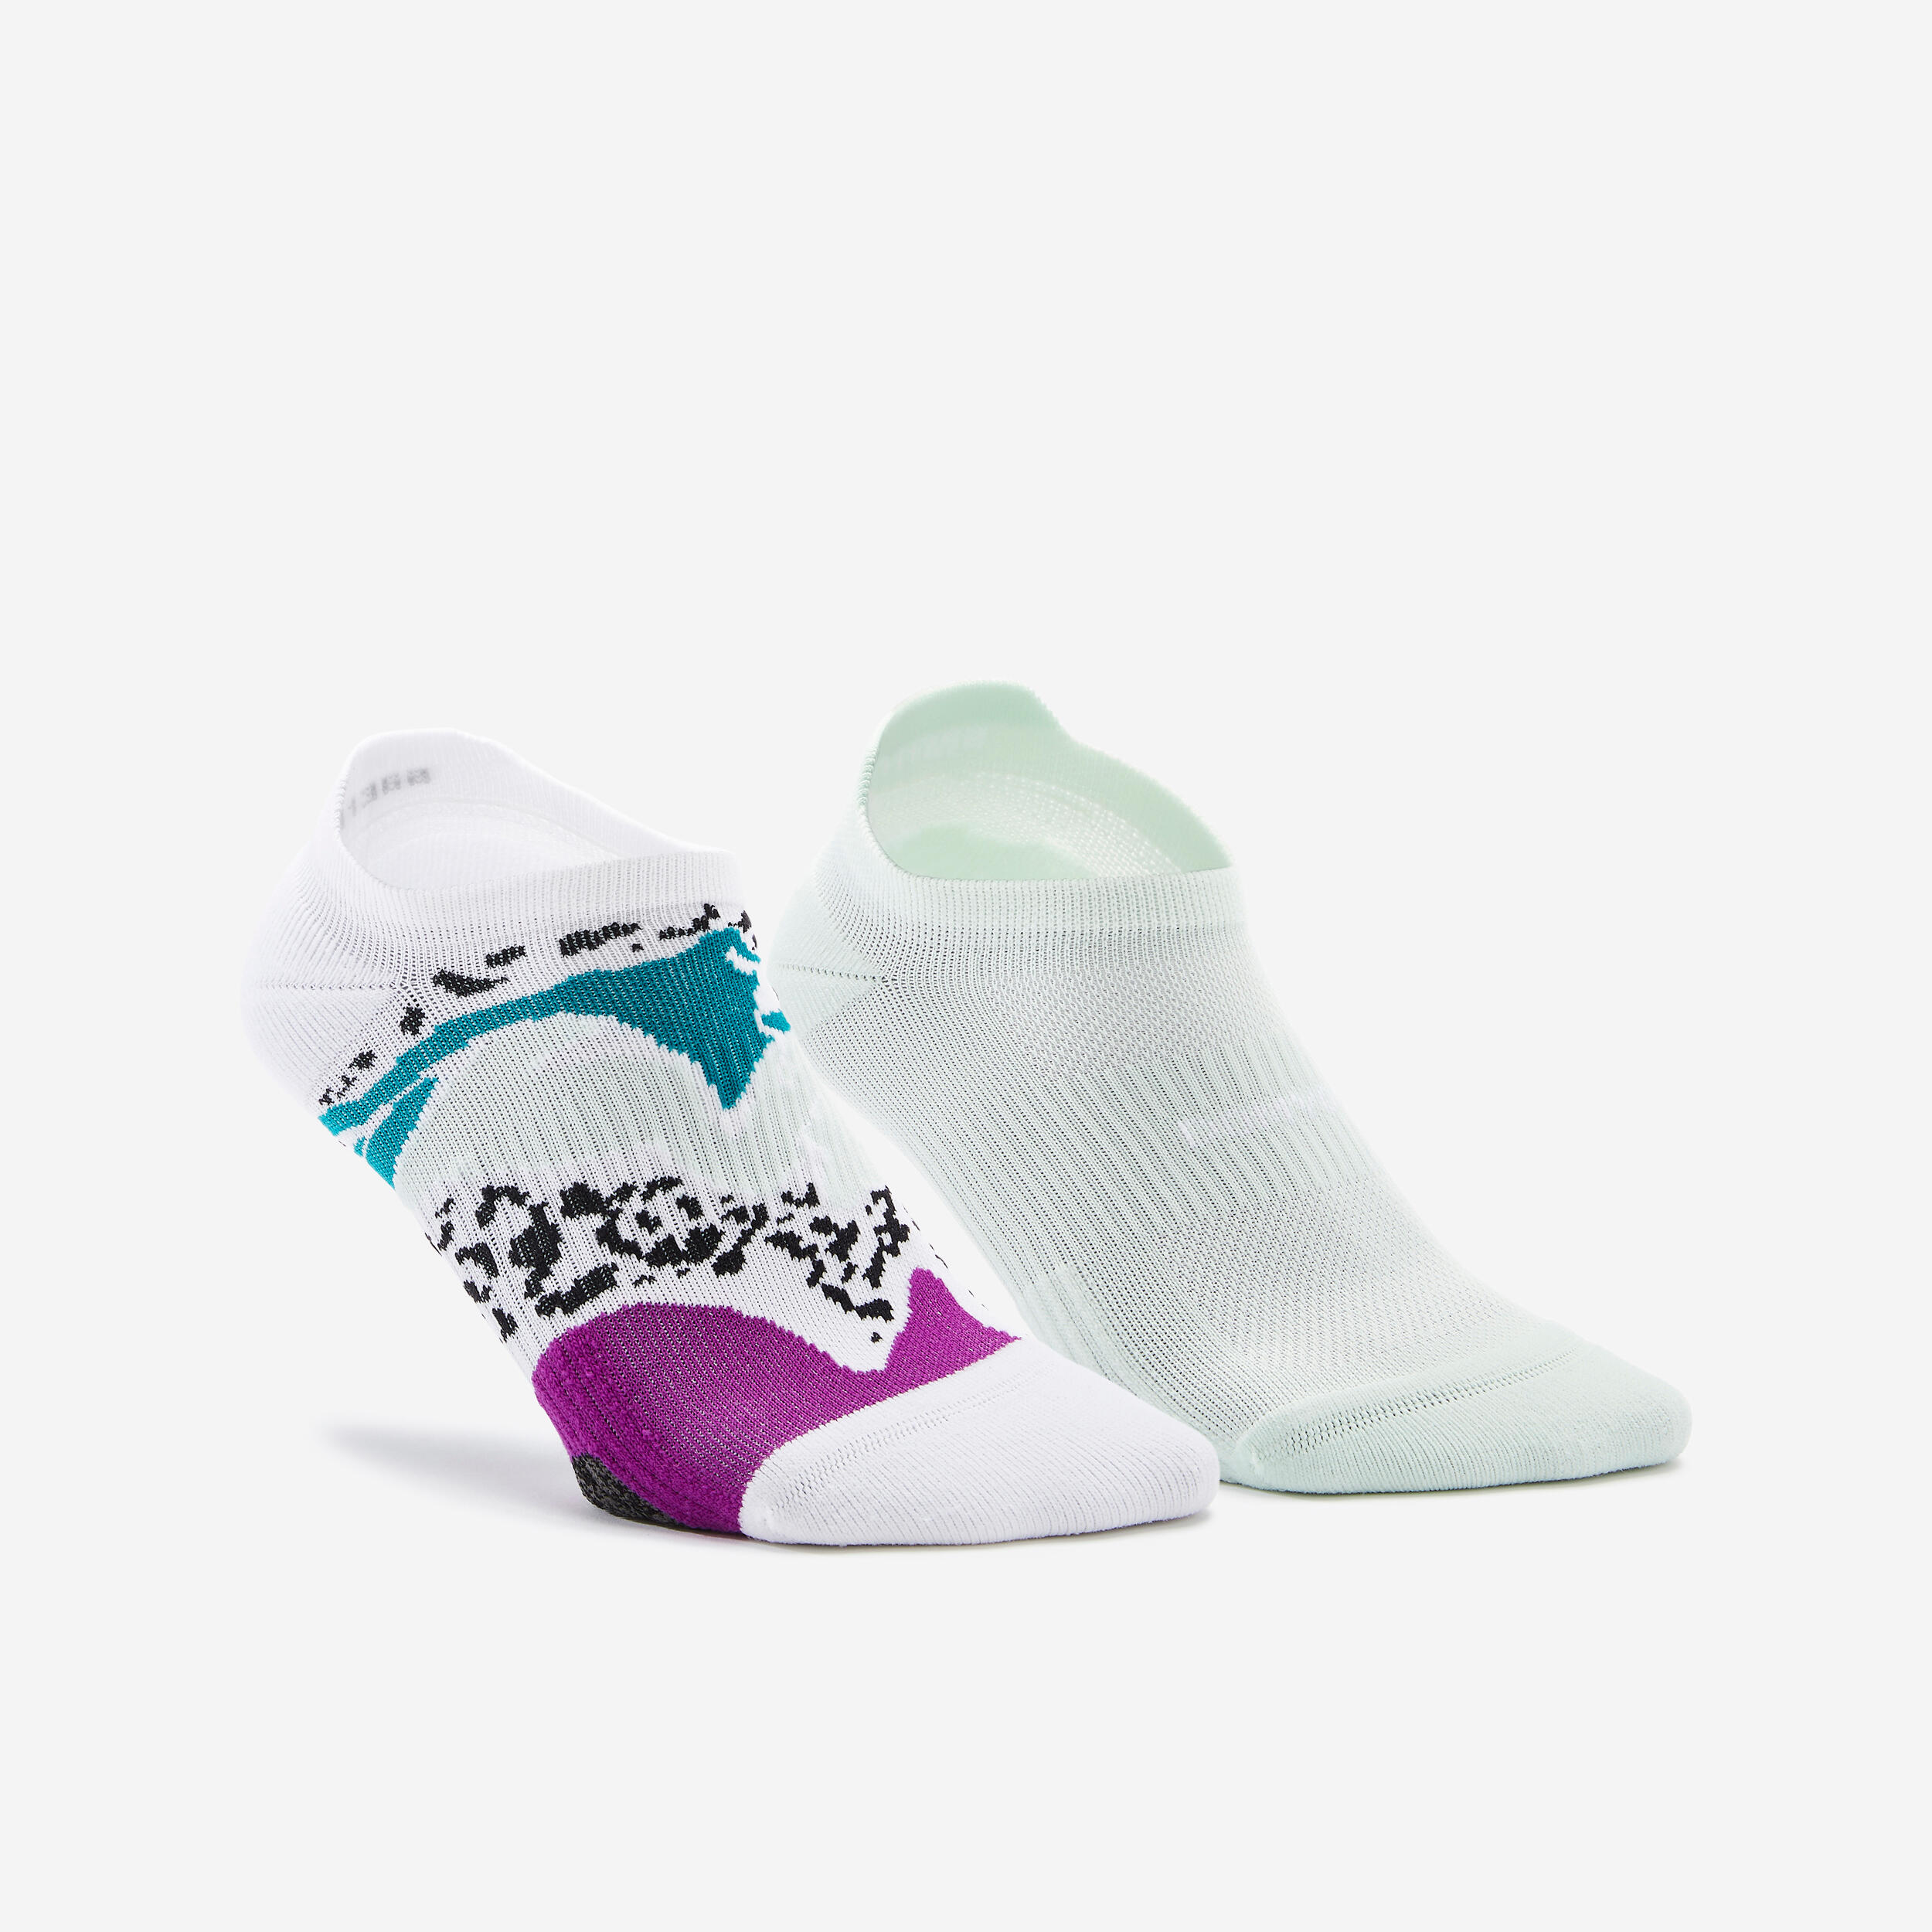 DOMYOS Women's Invisible Socks x 2 - Green